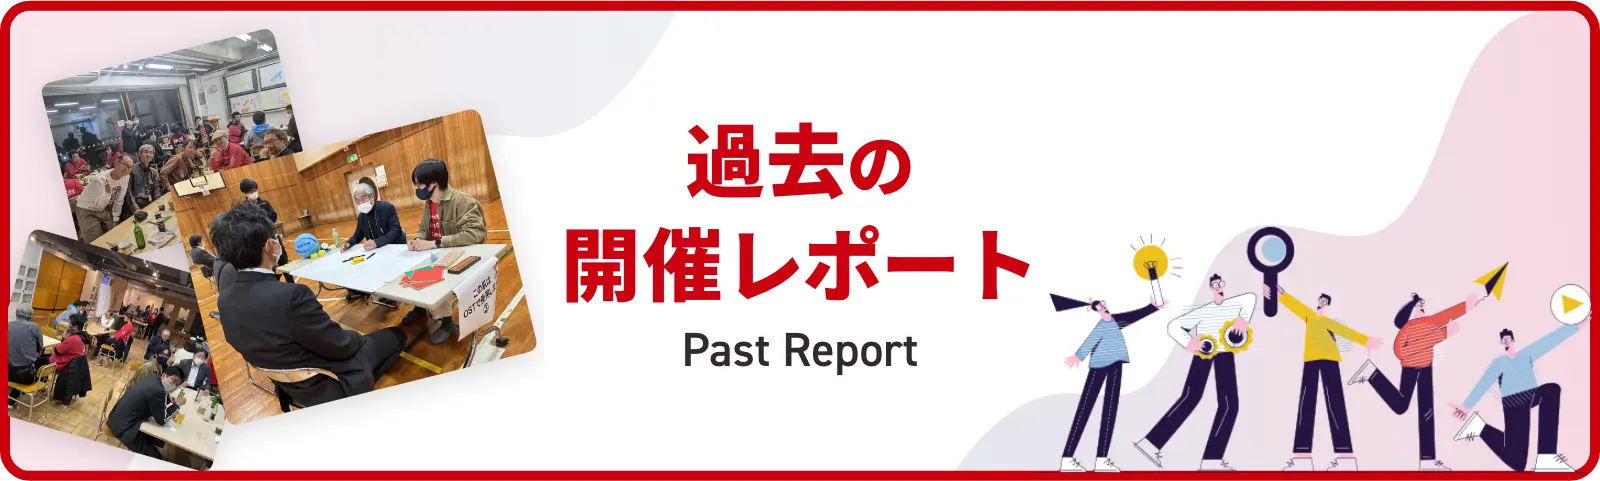 past report 過去の開催レポート